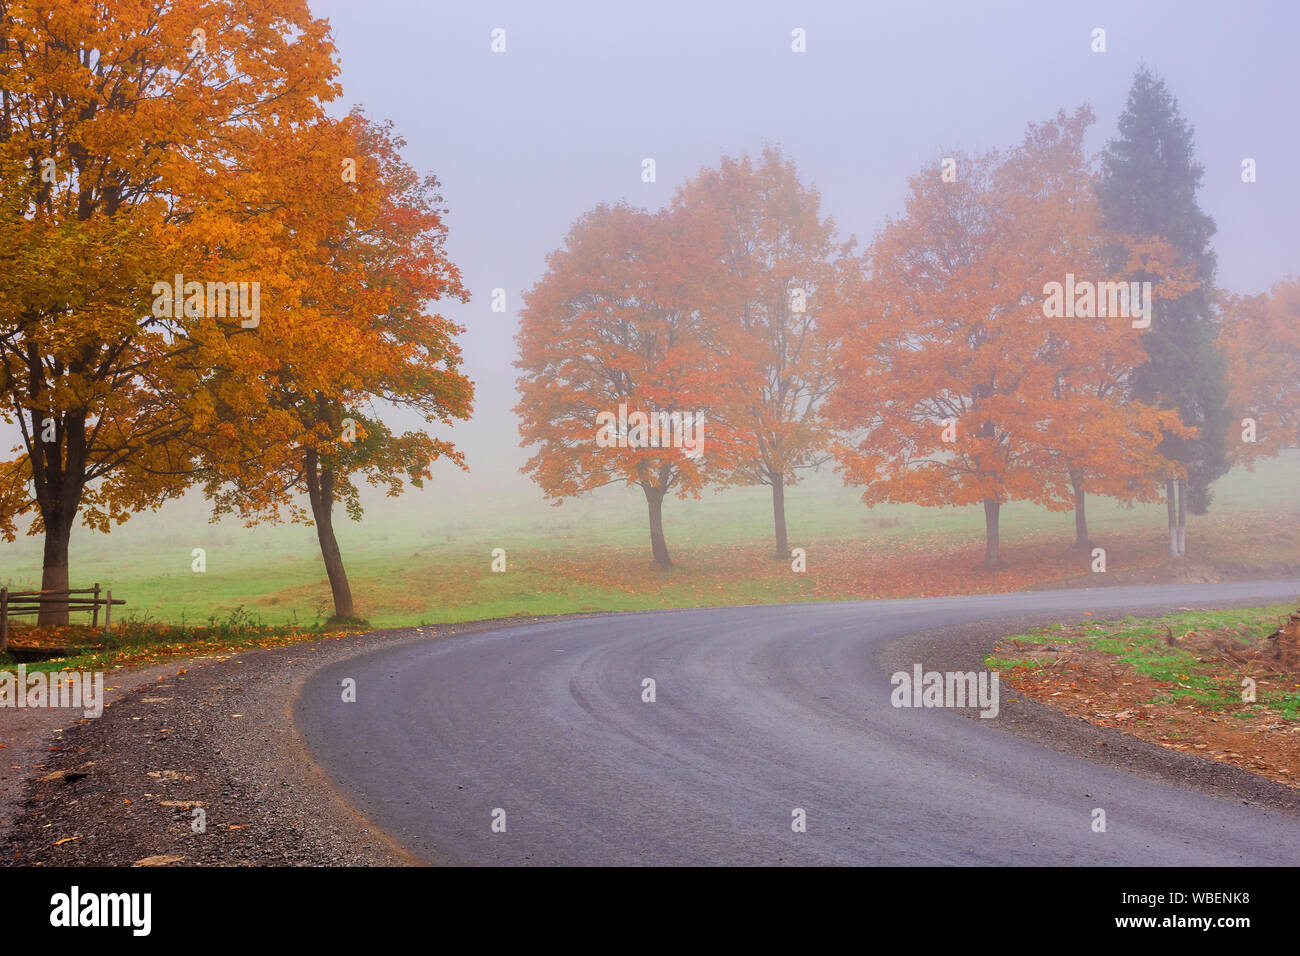 Straße windet sich durch Nebel im Herbst. schönen Herbst Landschaft mit Bäumen im buntes Laub. erstaunlich Oktober Wetter am Morgen. Stockfoto